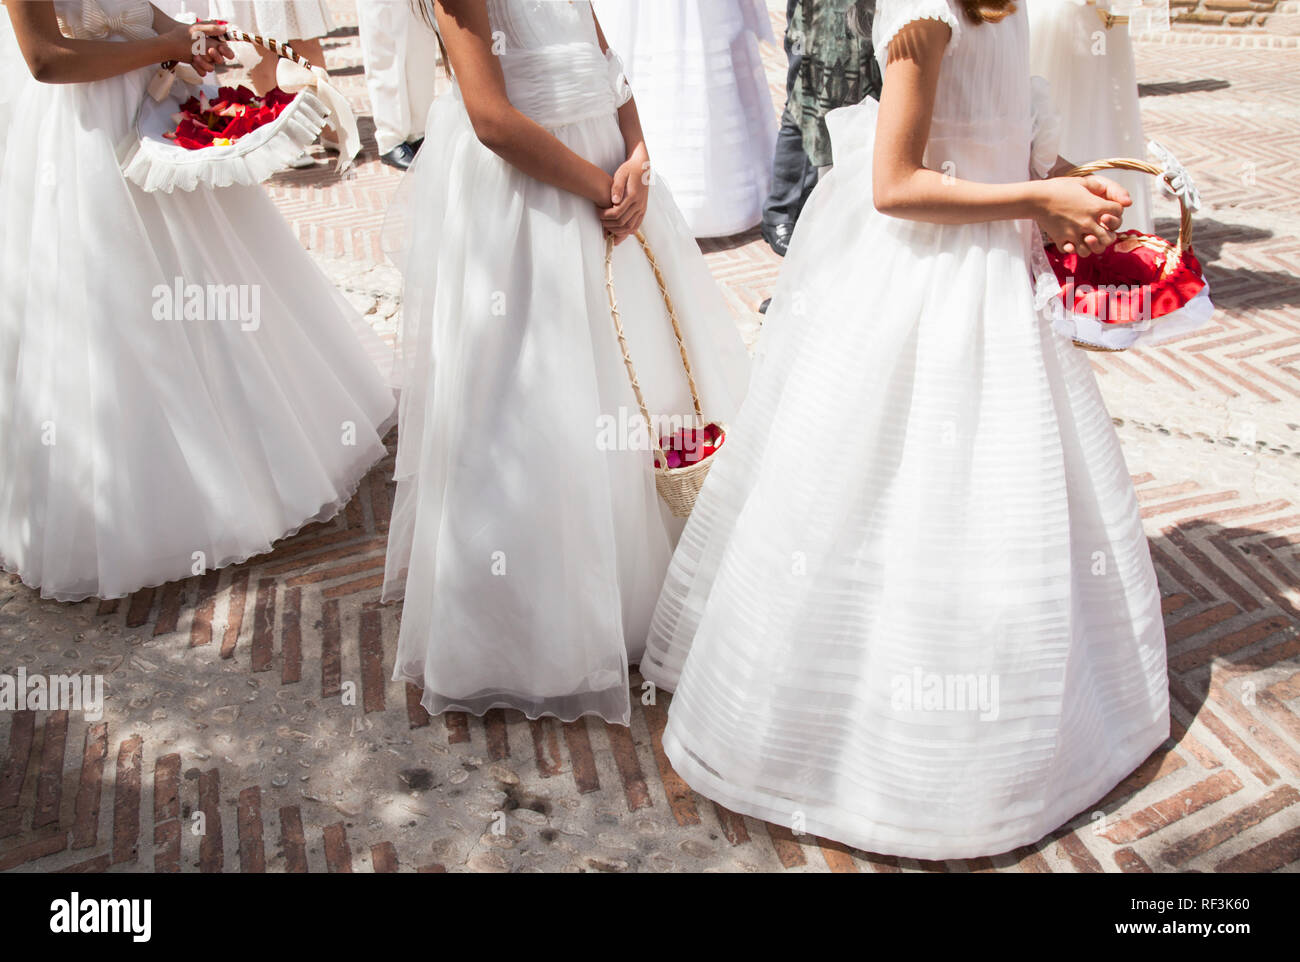 Les filles des vêtements blancs et de longues robes communion avec panier de fleurs Banque D'Images